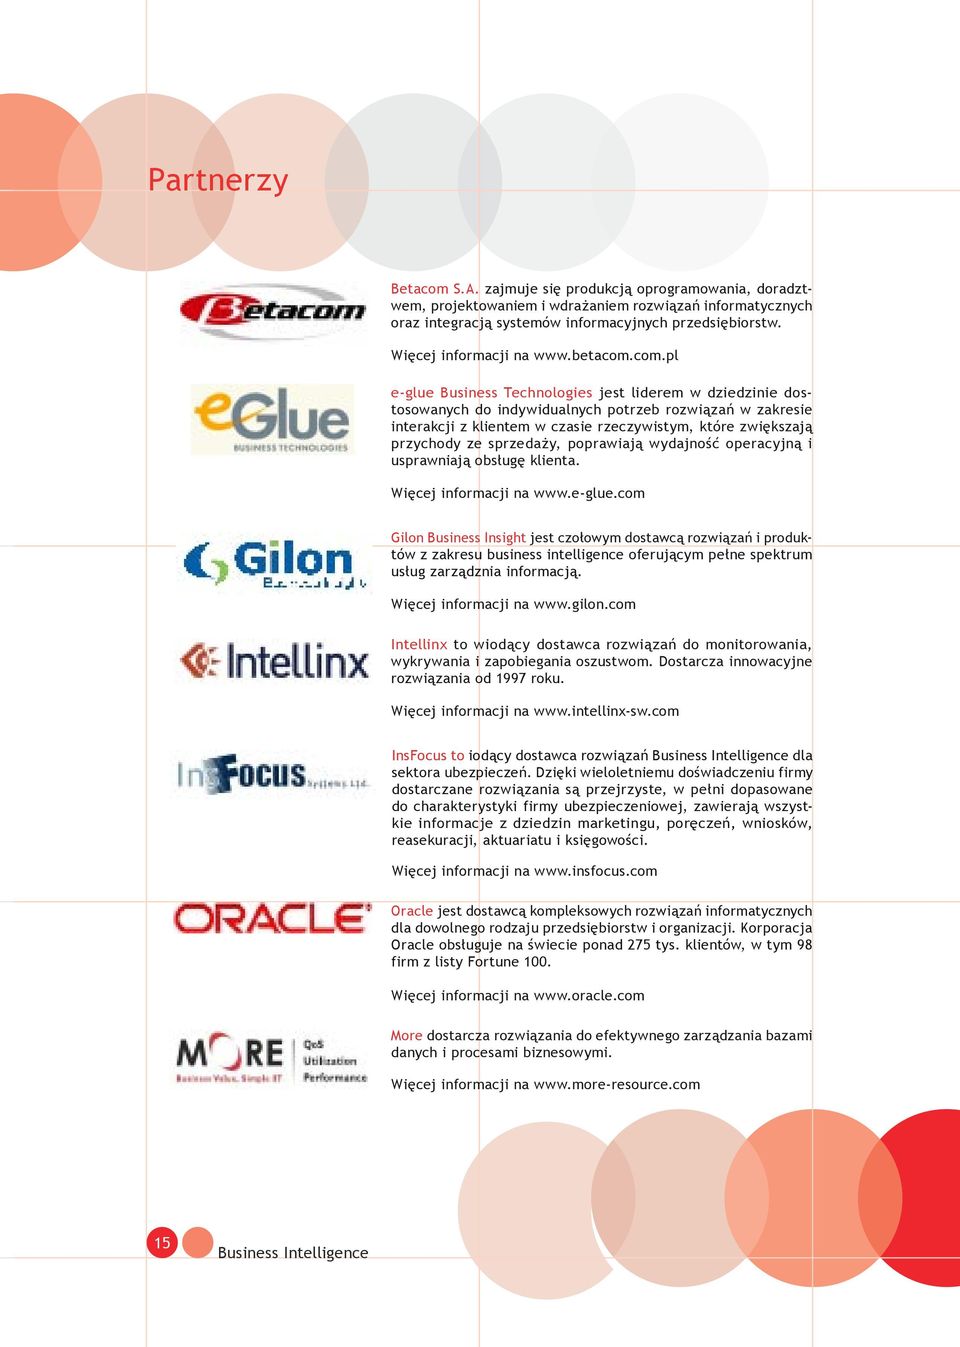 com.pl e-glue Business Technologies jest liderem w dziedzinie dostosowanych do indywidualnych potrzeb rozwiązań w zakresie interakcji z klientem w czasie rzeczywistym, które zwiększają przychody ze